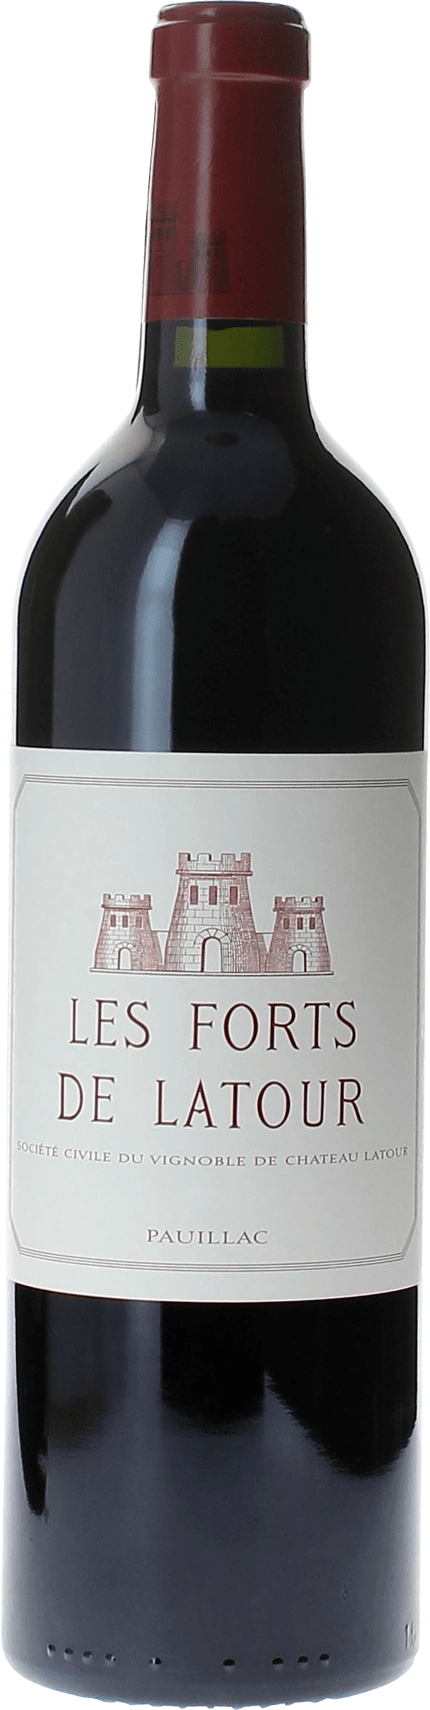 Les forts de latour 1990 2me vin de LATOUR Pauillac, Bordeaux rouge